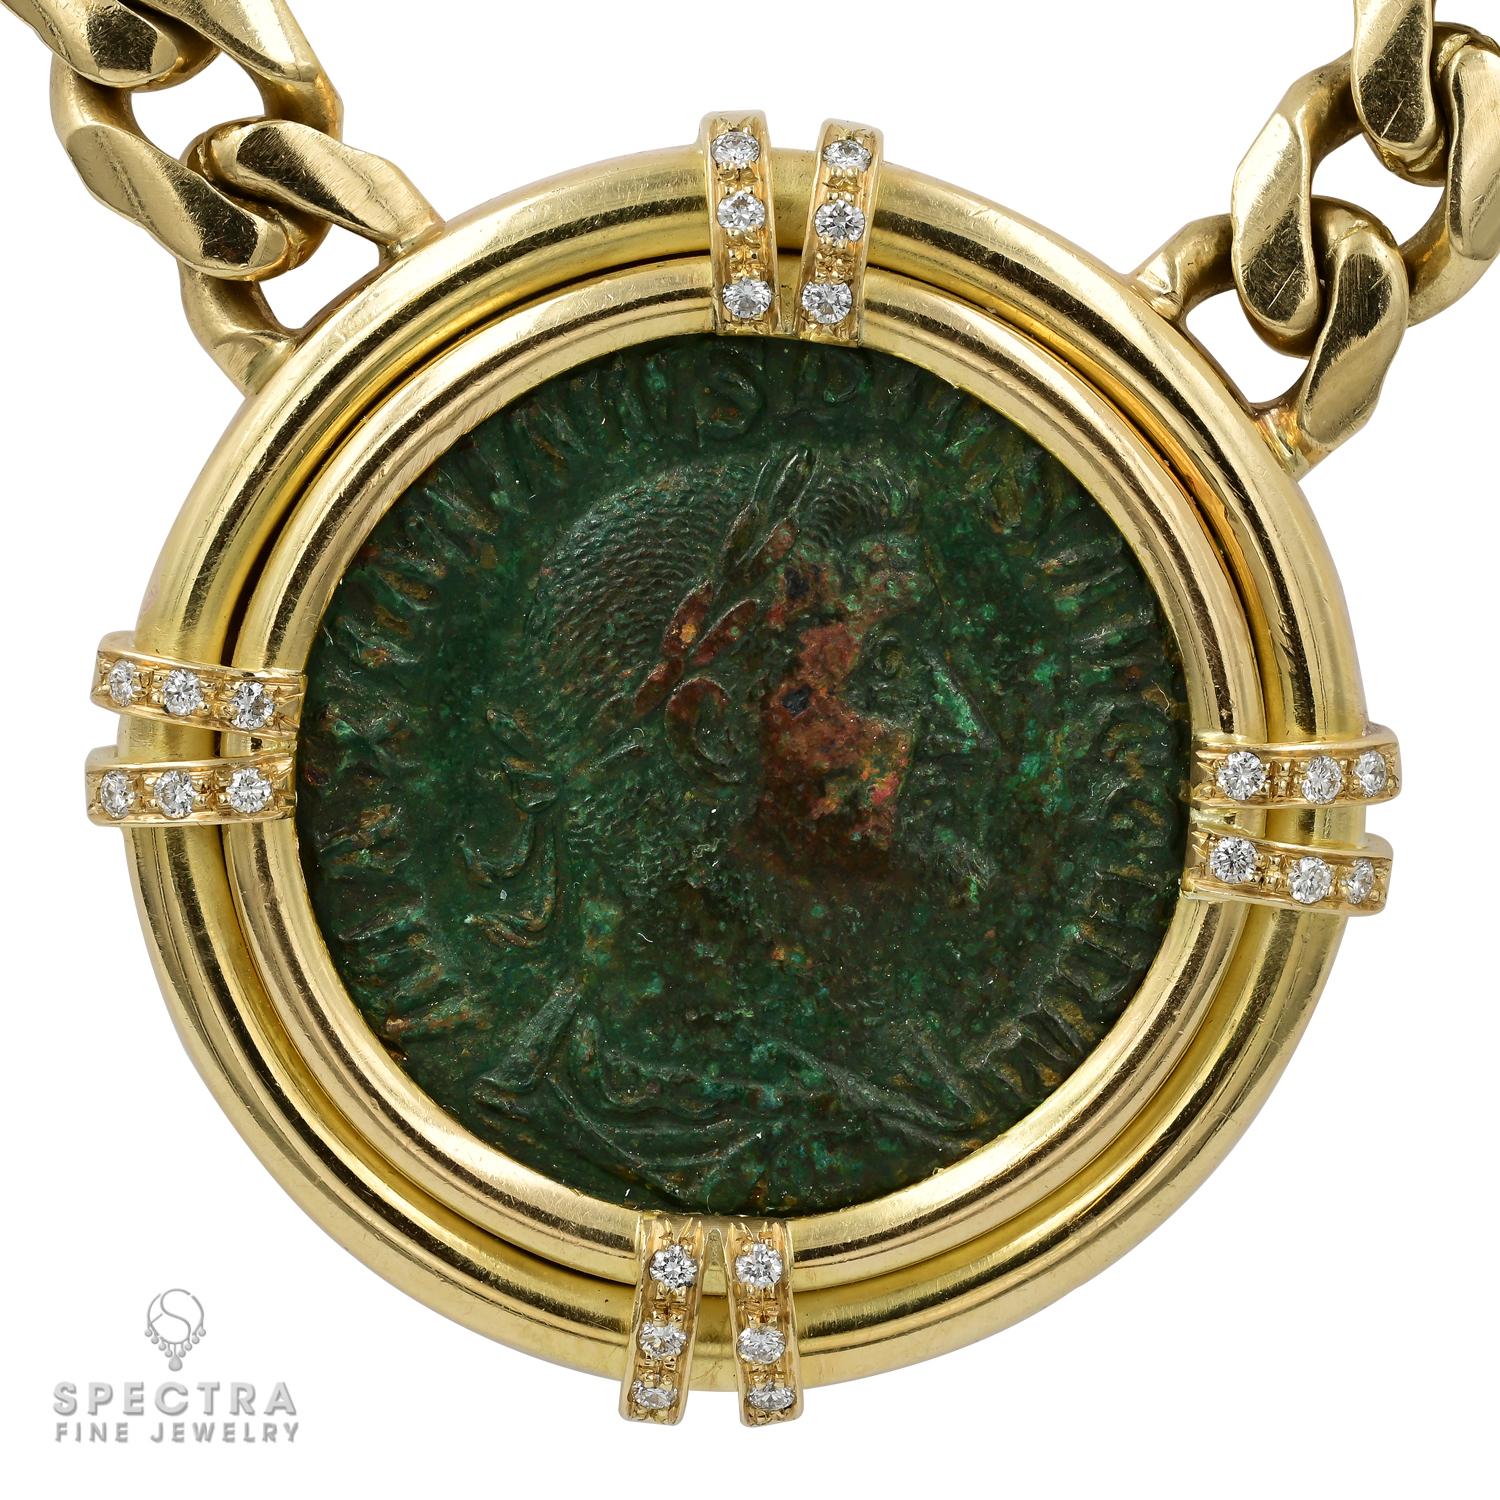 Die Bulgari 'Monete' Ancient Coin Necklace ist eine exquisite Mischung aus Antike und Luxus. Dieses außergewöhnliche Collier zeigt eine einzigartige antike römische Münze, die mit einer himmlischen Anordnung von Diamanten verziert ist, die diesem